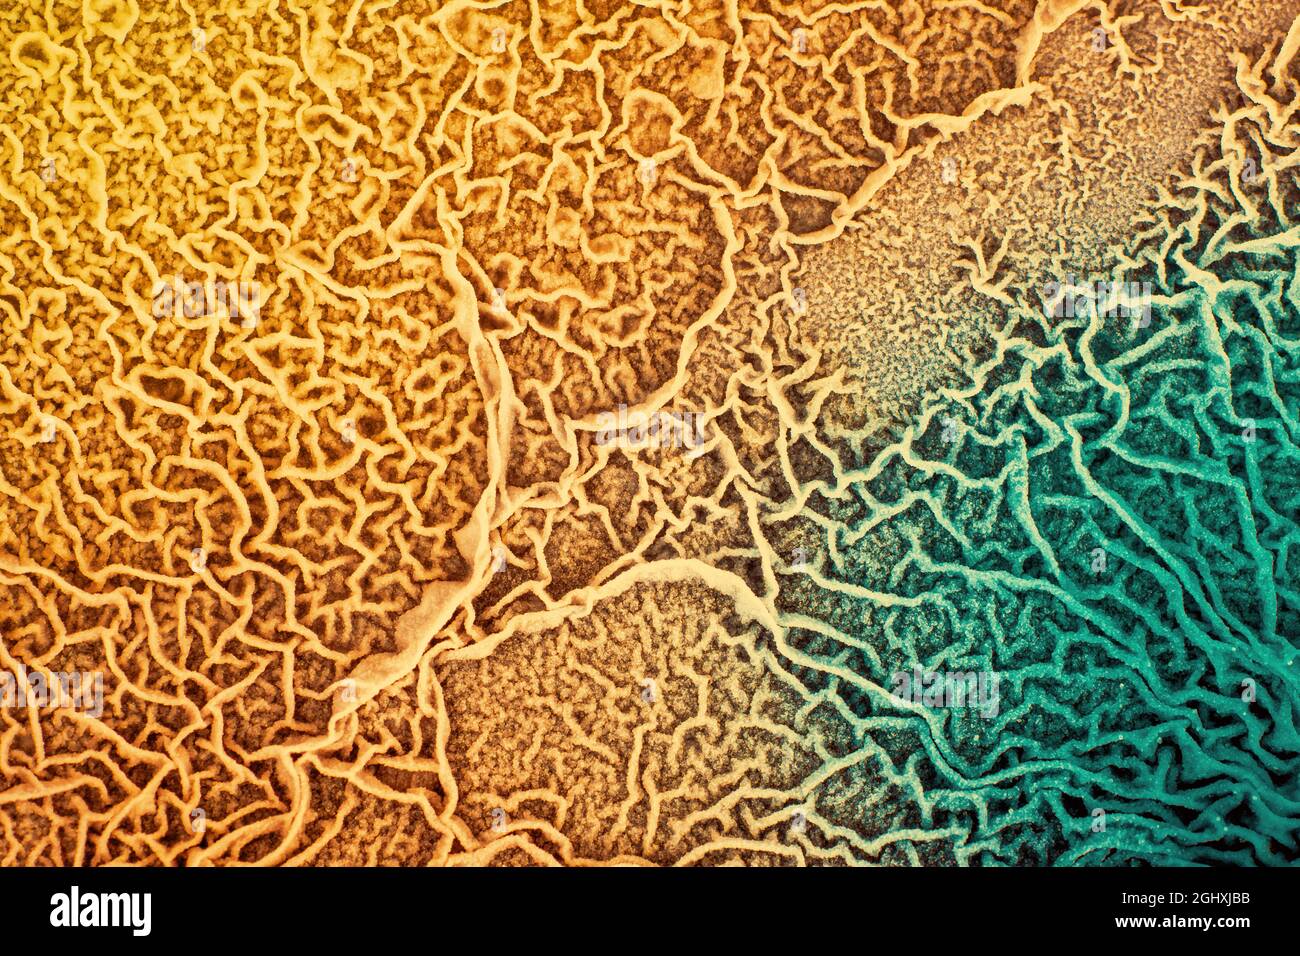 La surface du tissu biologique infecté par des micro-organismes pathogènes  Photo Stock - Alamy